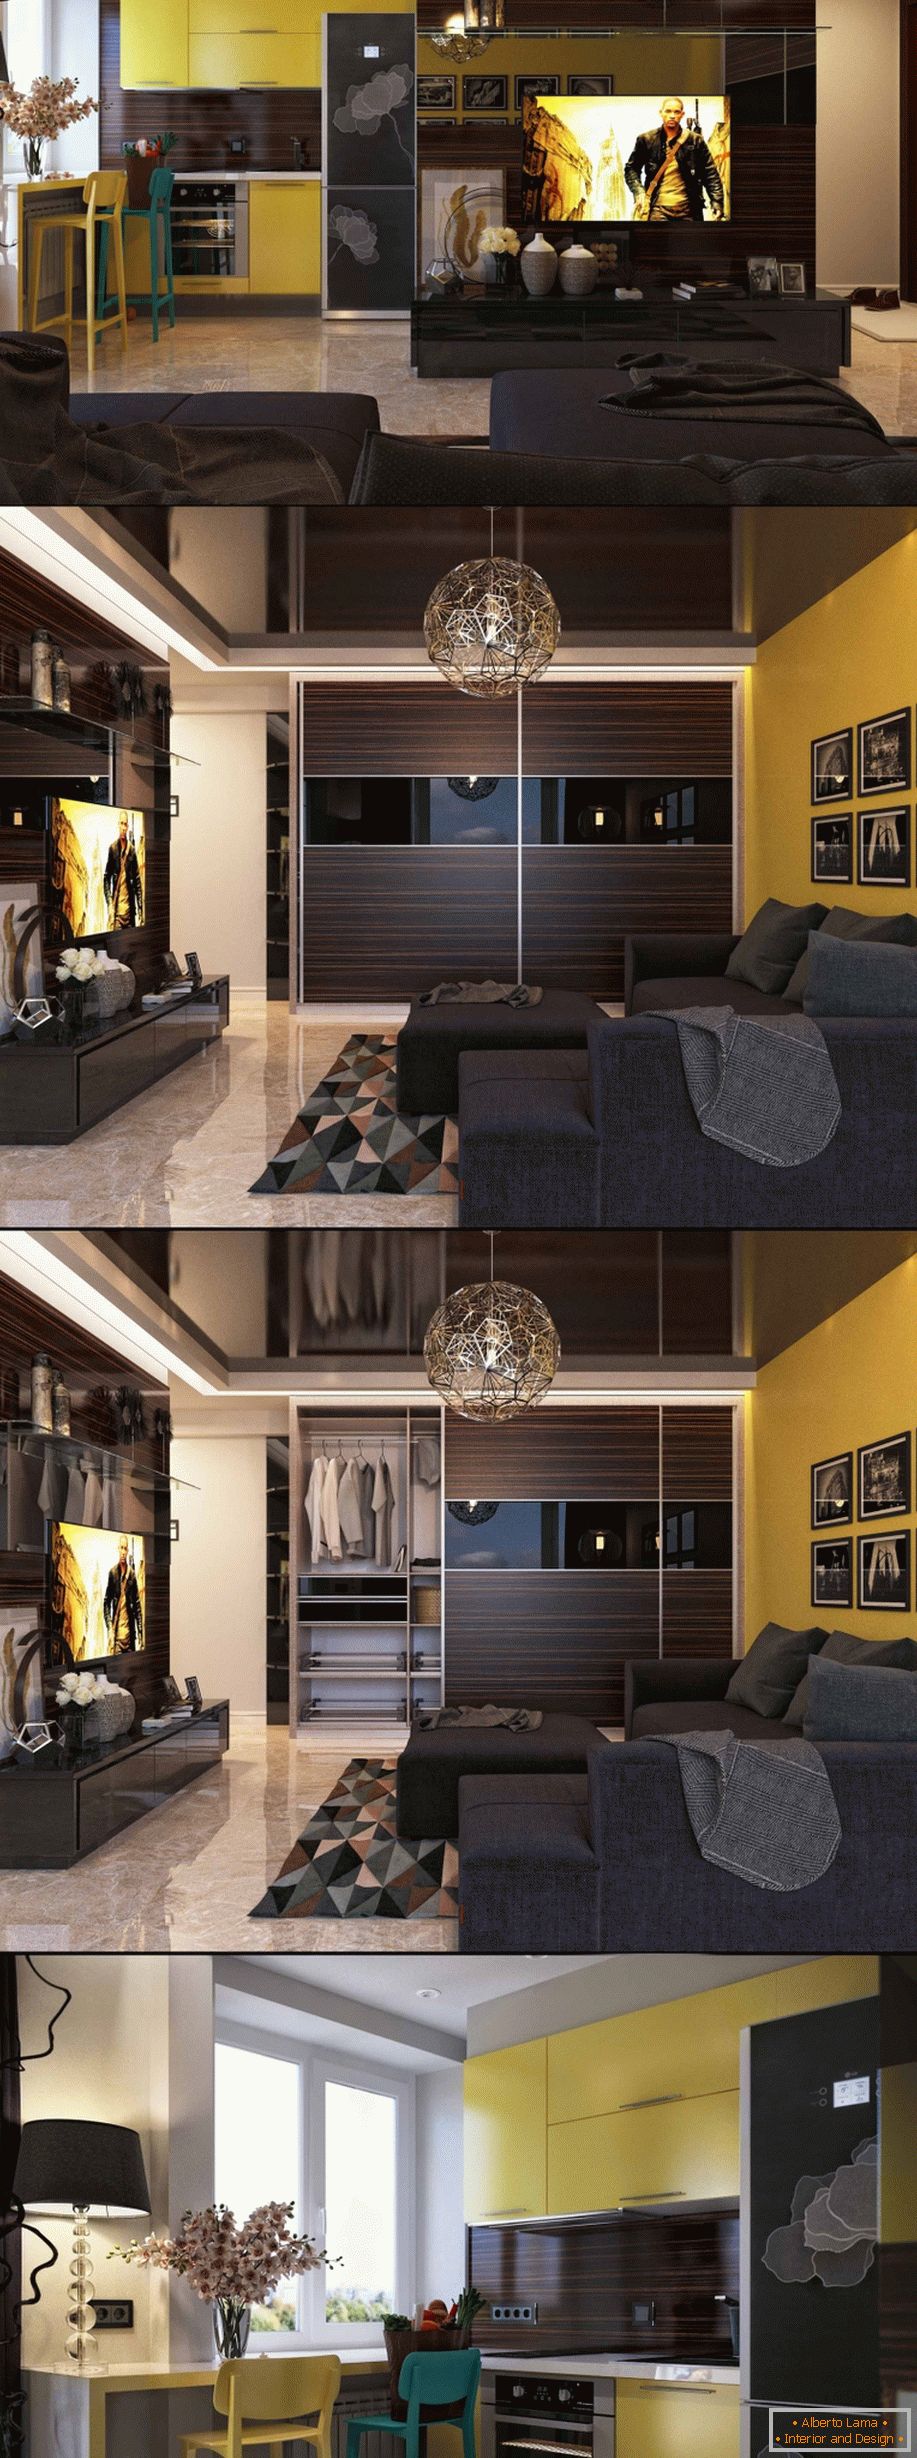 Diseño interior moderno de un pequeño apartamento